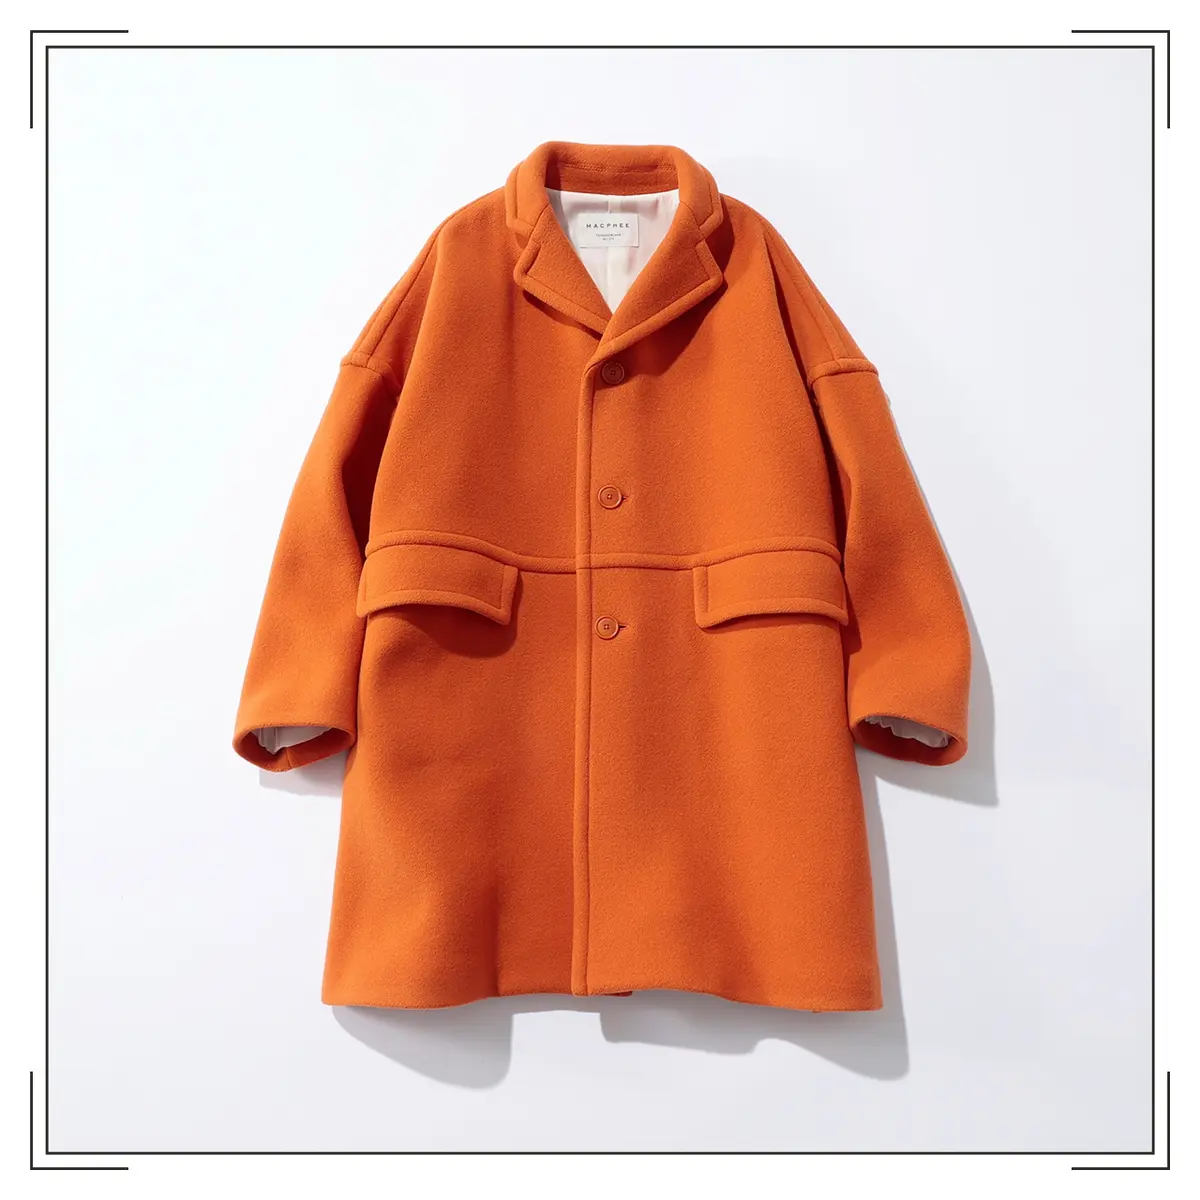 『MACPHEE』のオレンジコート